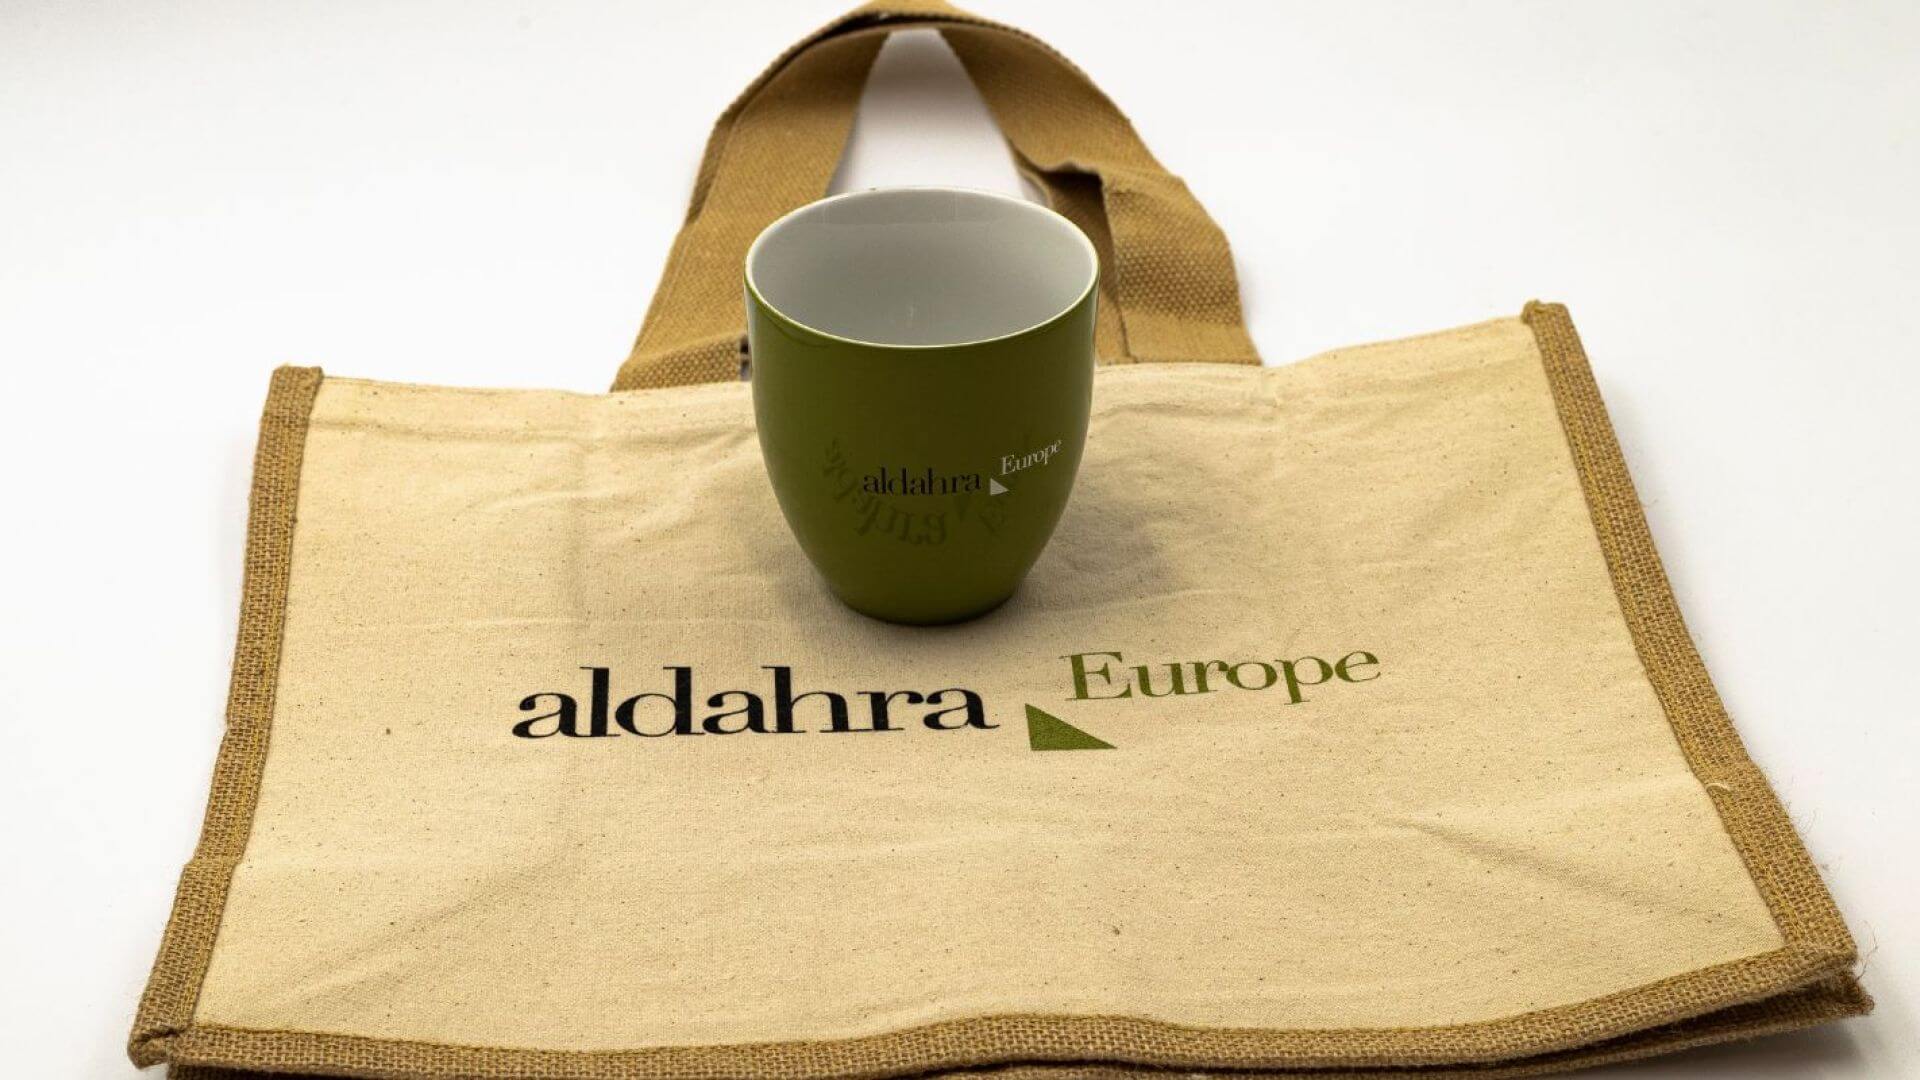 ALDAHRA EUROPE